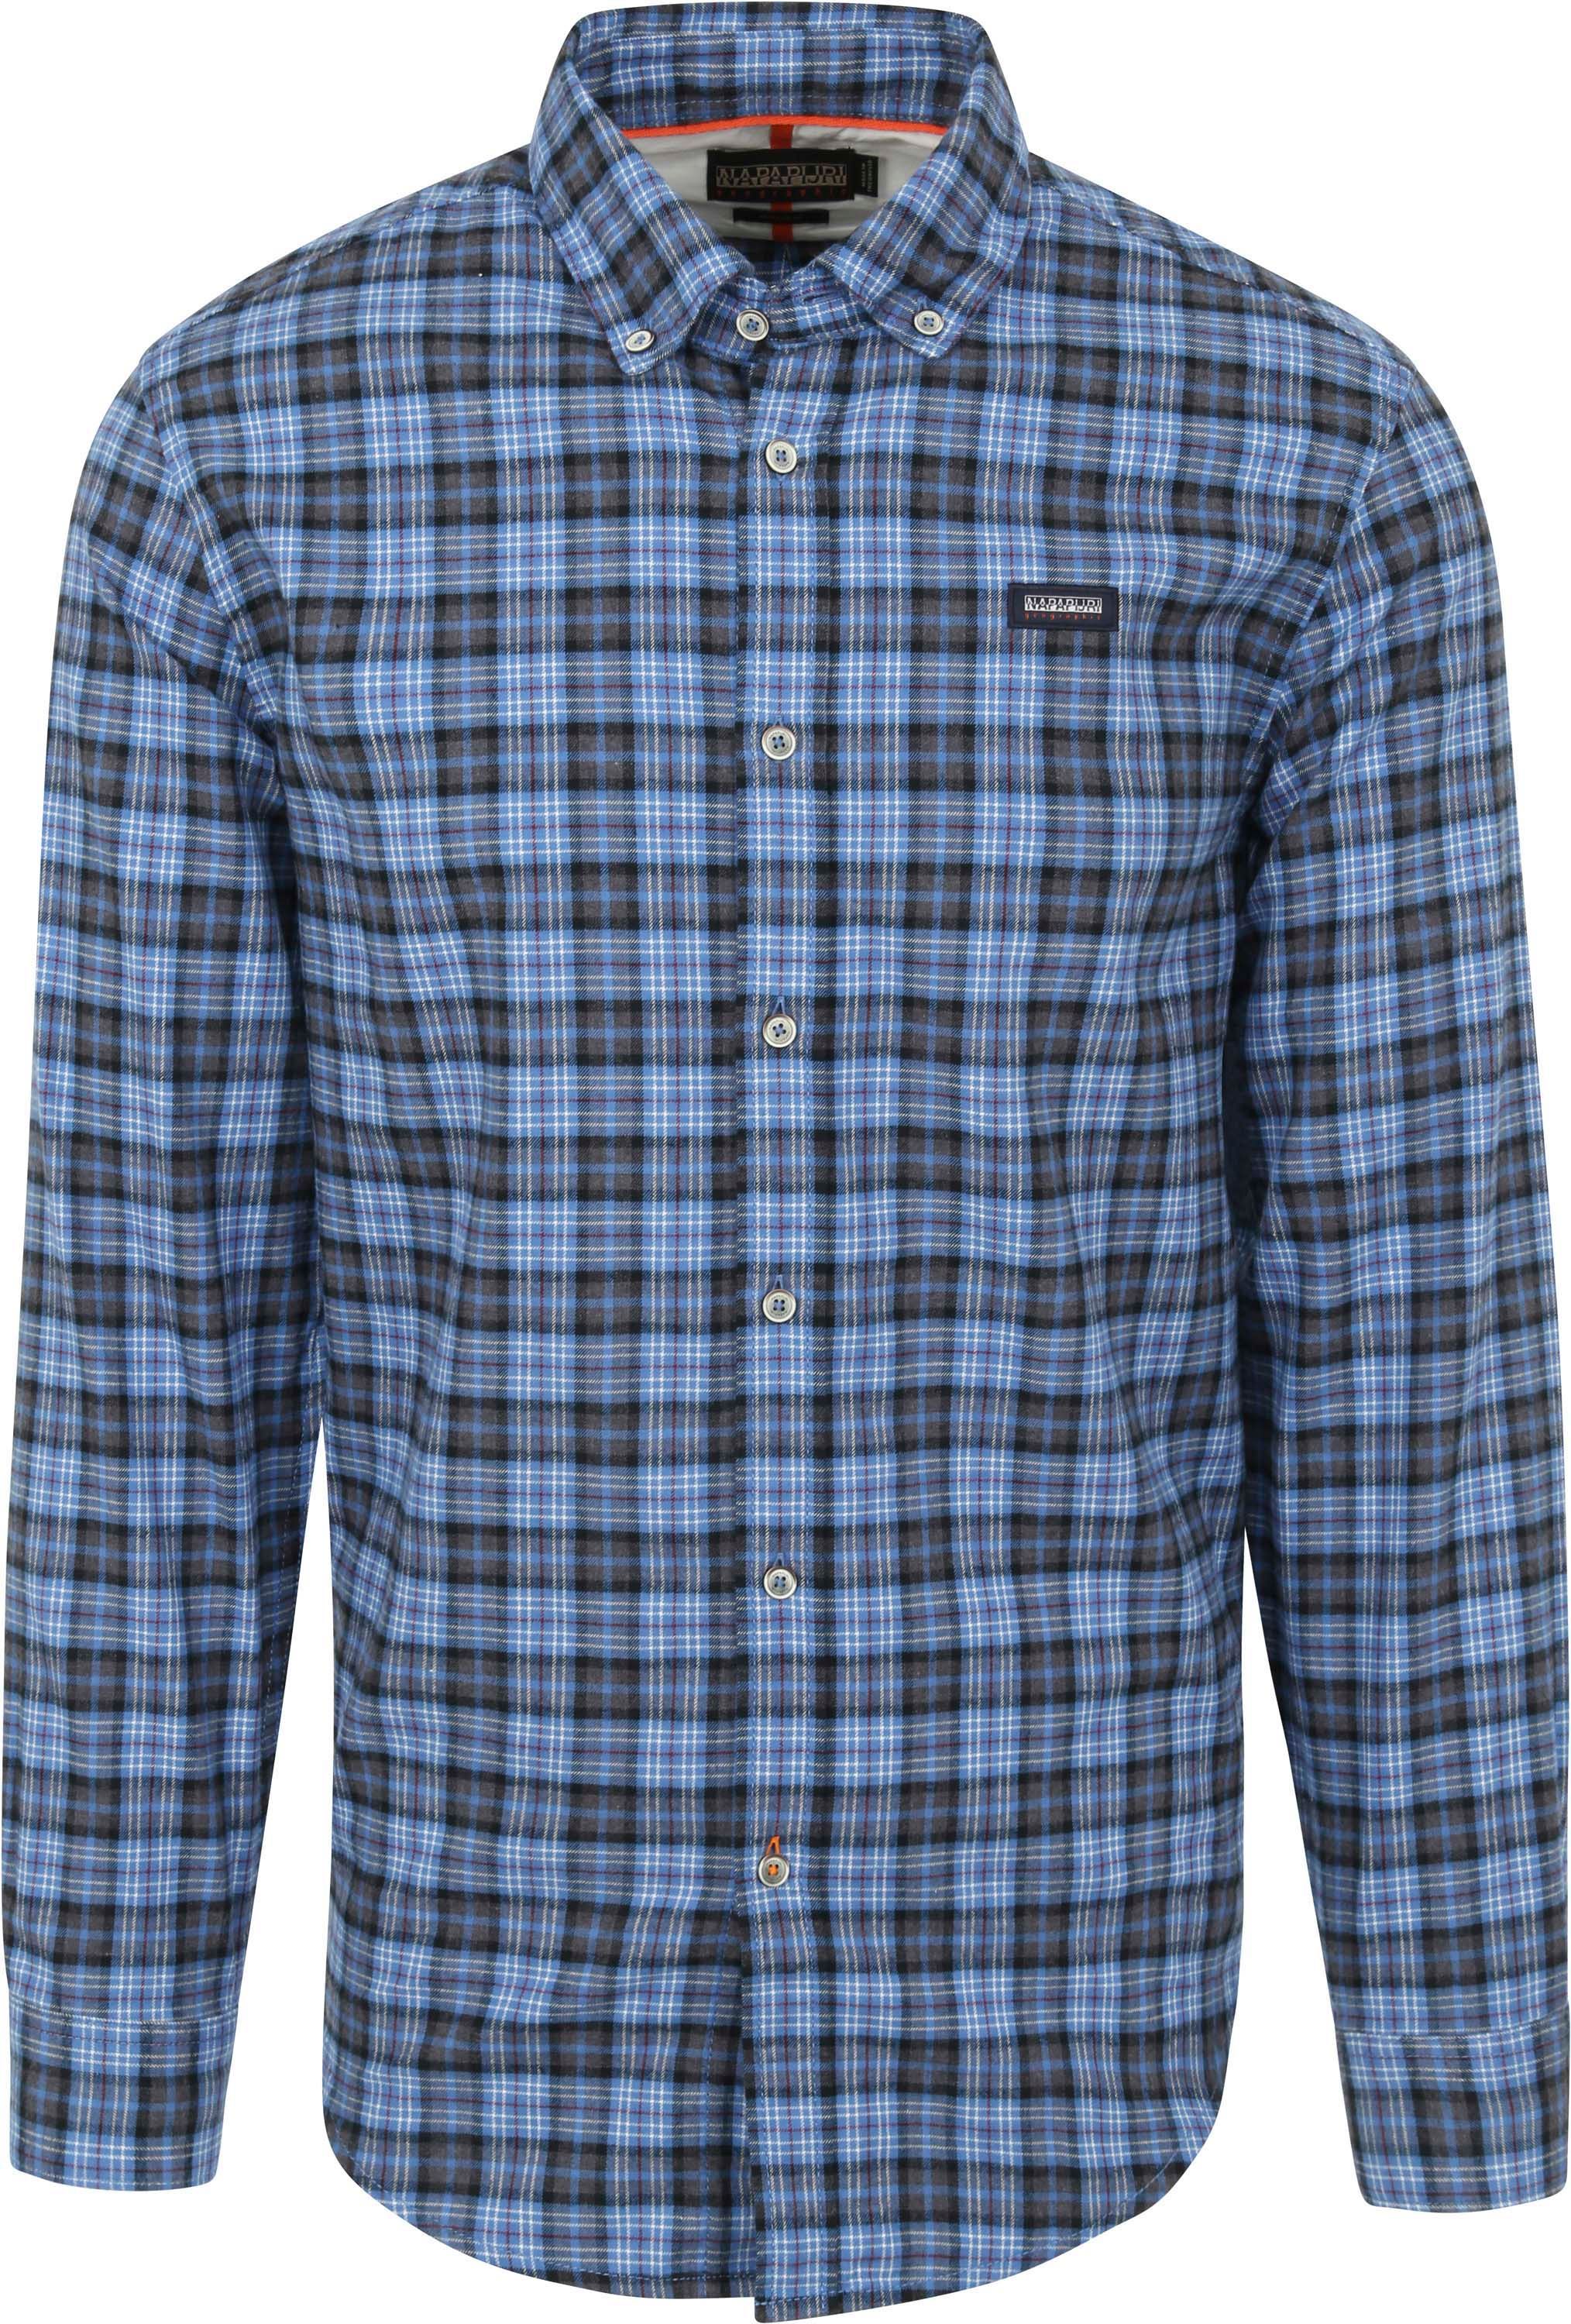 Napapijri Shirt Checkered  Blue size L